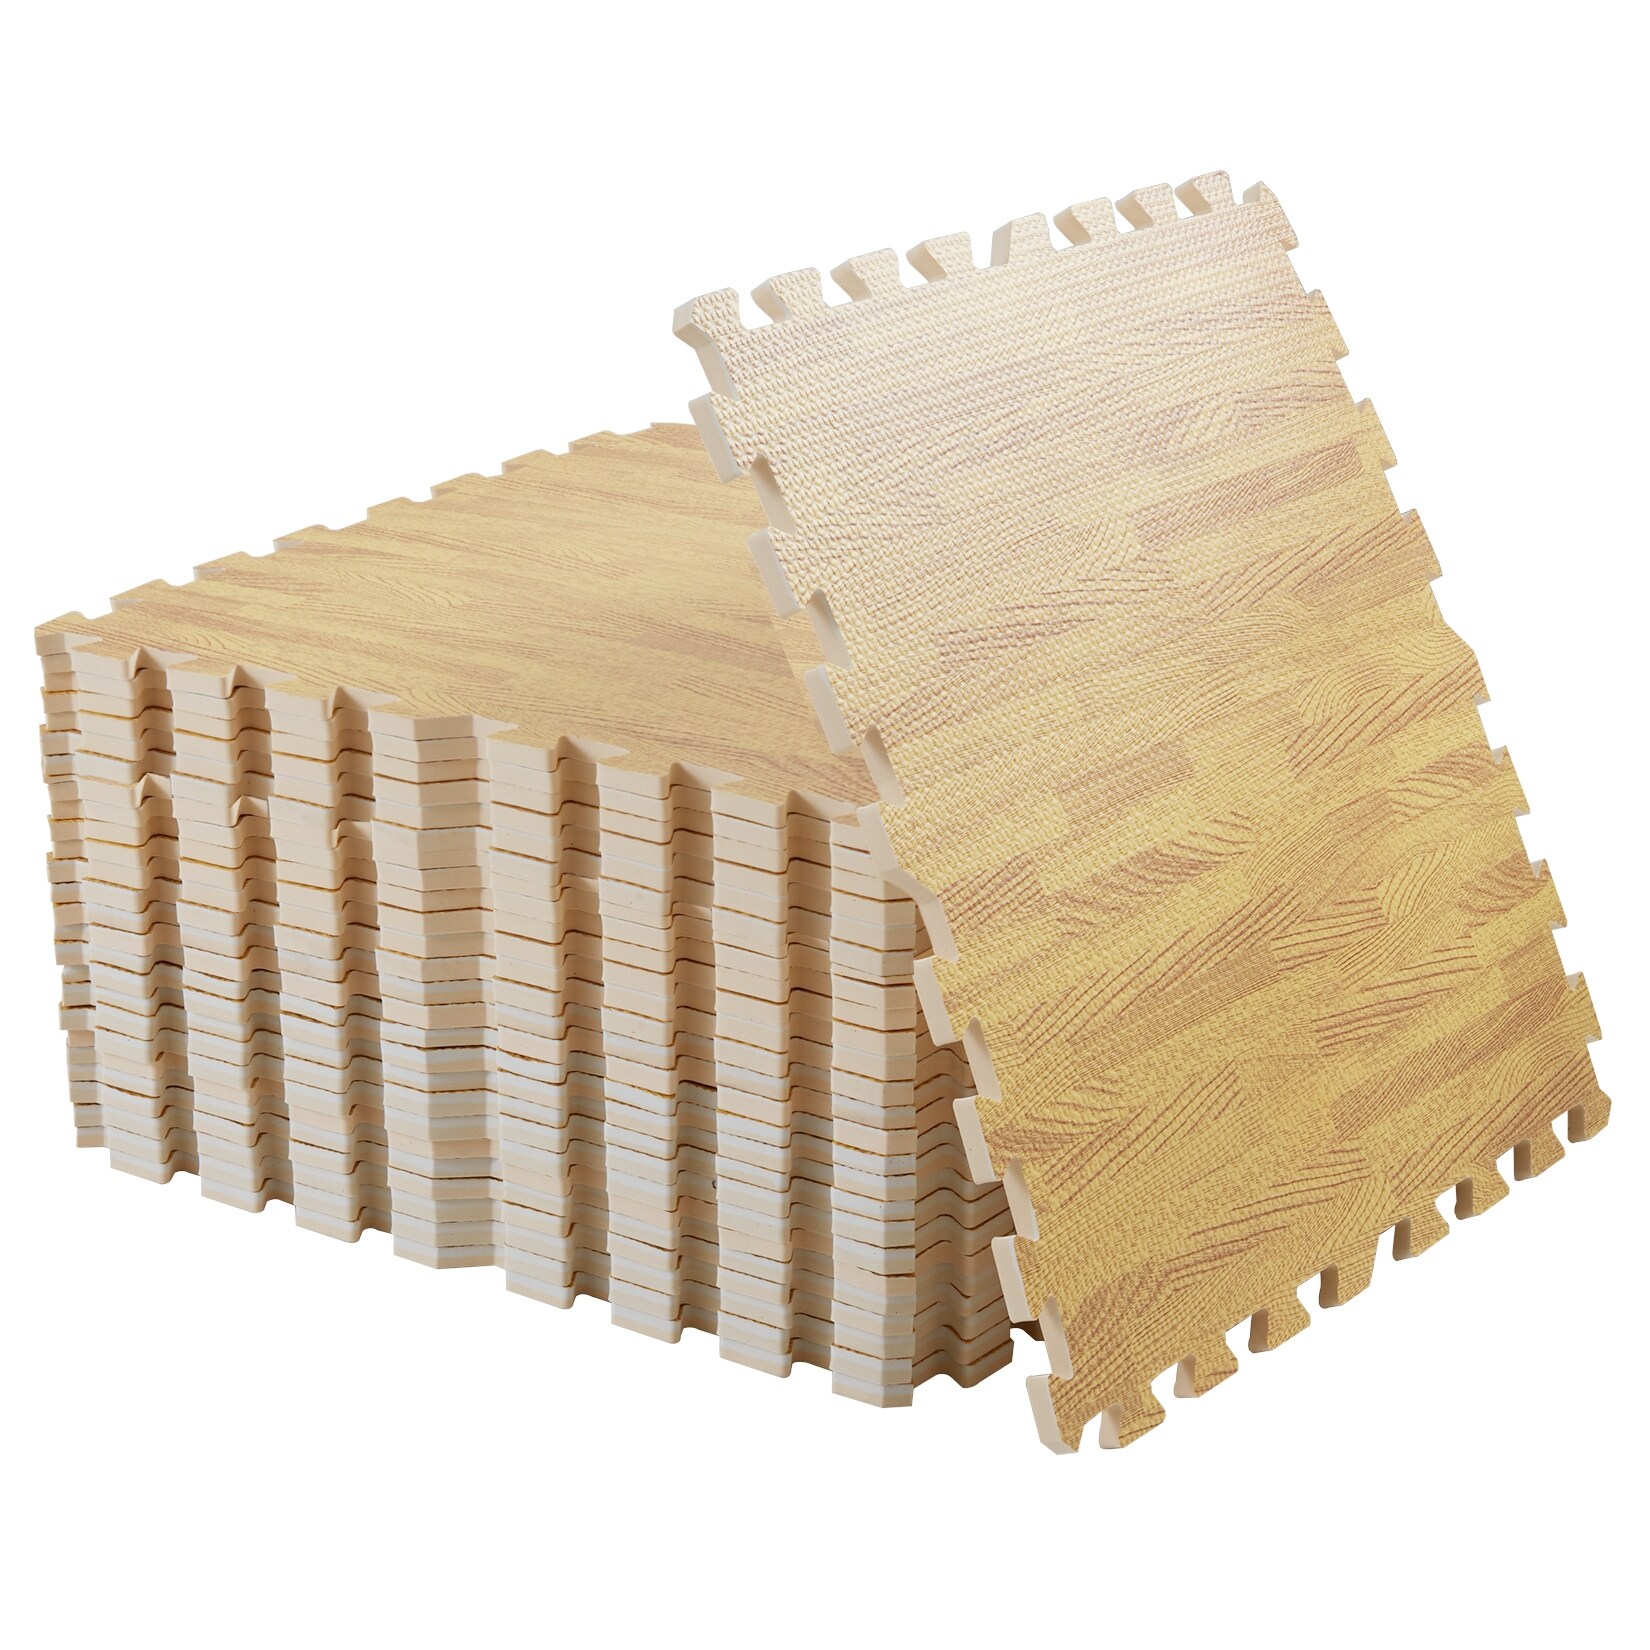 Foam Floor Tiles Wood Grain Supplier